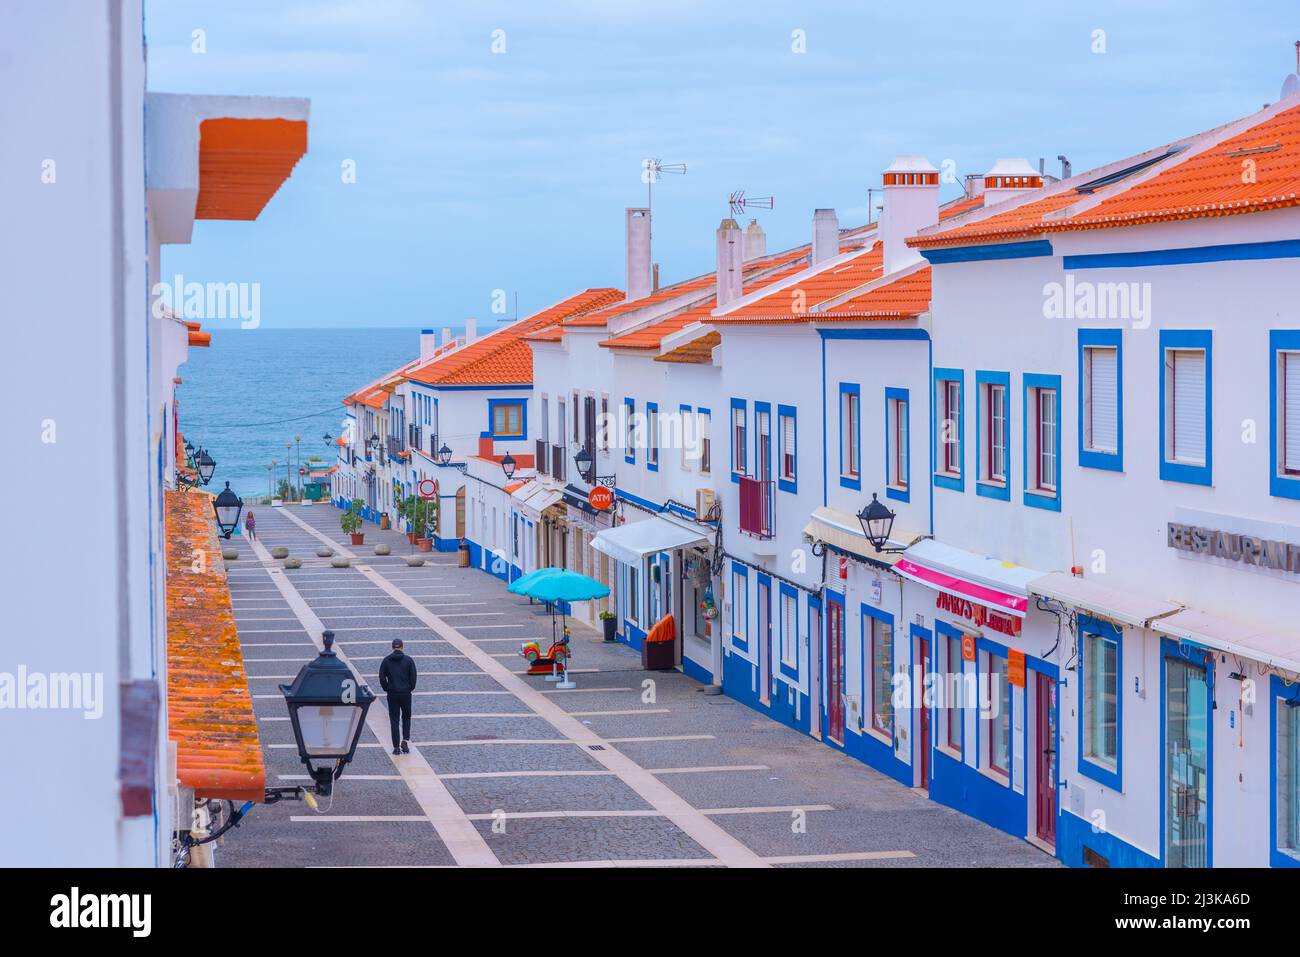 Porto Covo, Portugal, June 21, 2021: Narrow street of the old town at  Portuguese town Porto Covo Stock Photo - Alamy